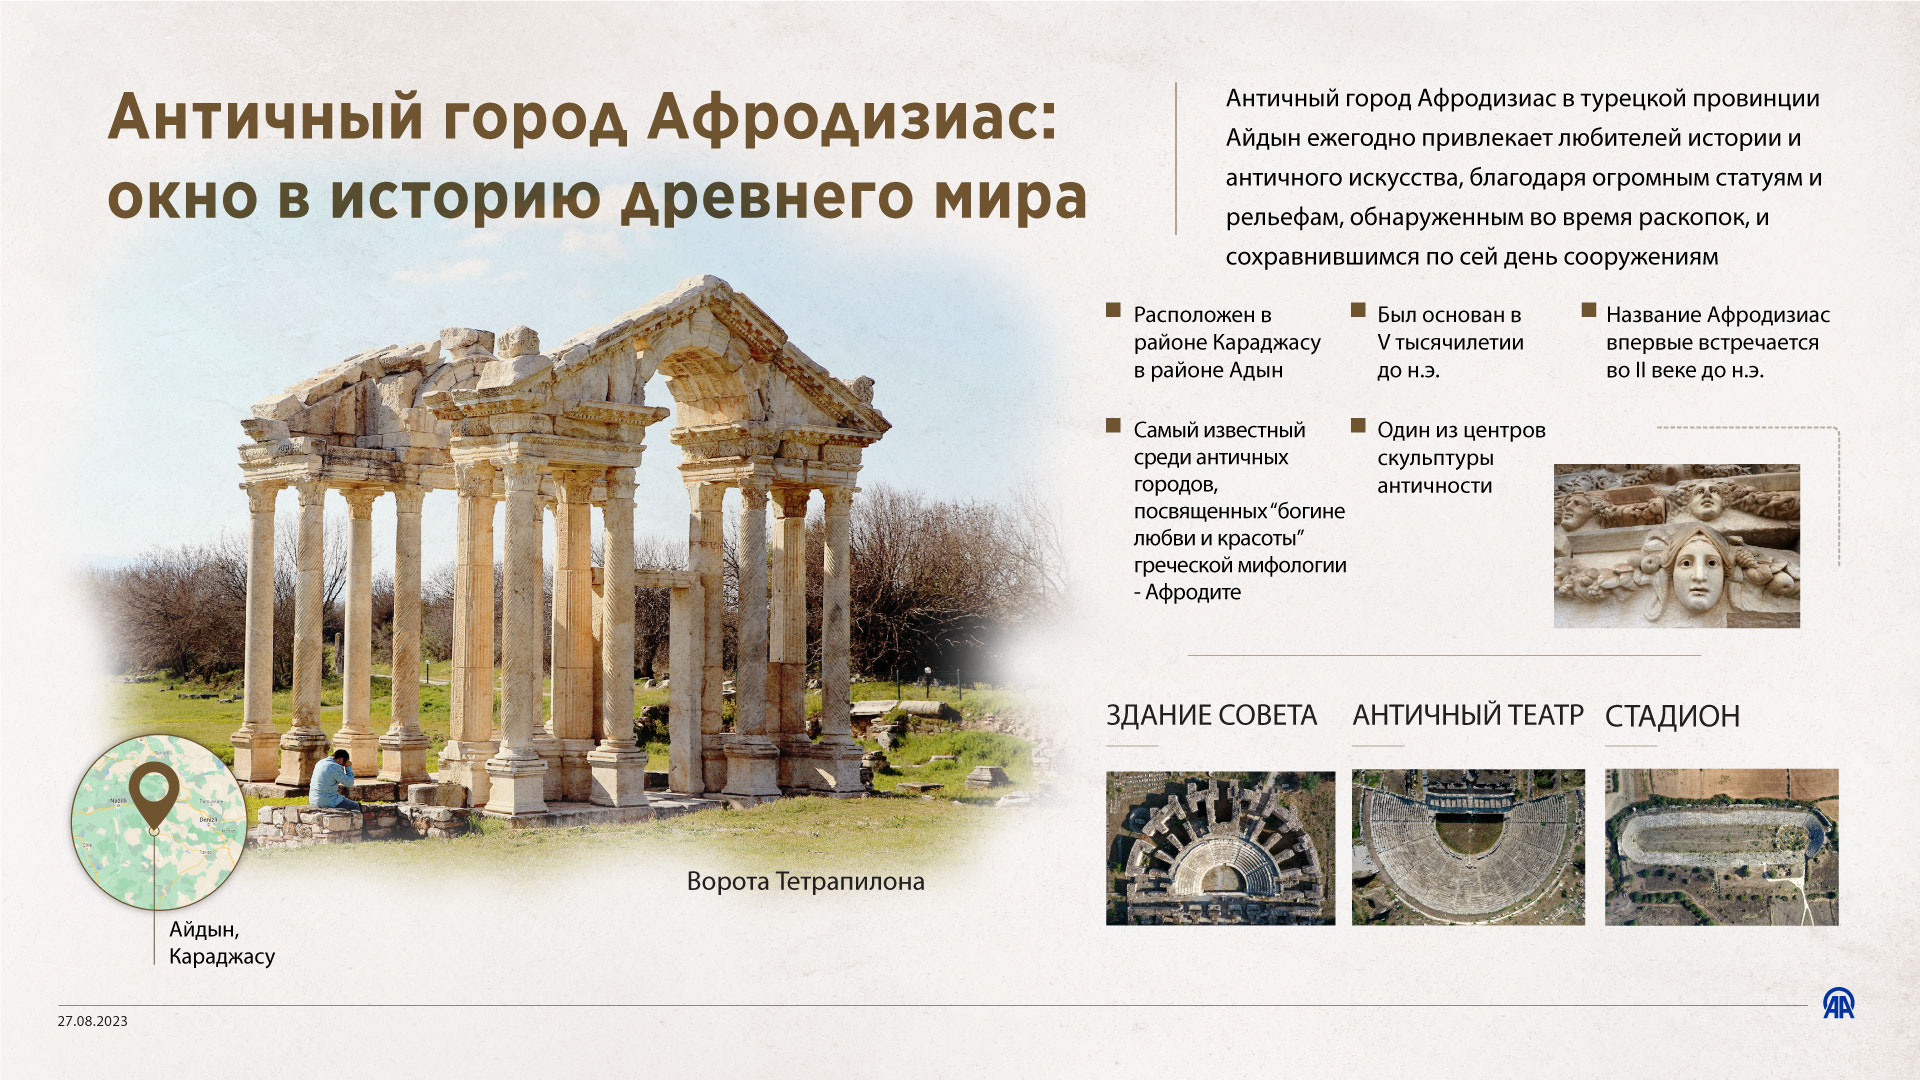 Античный город Афродизиас: окно в историю древнего мира